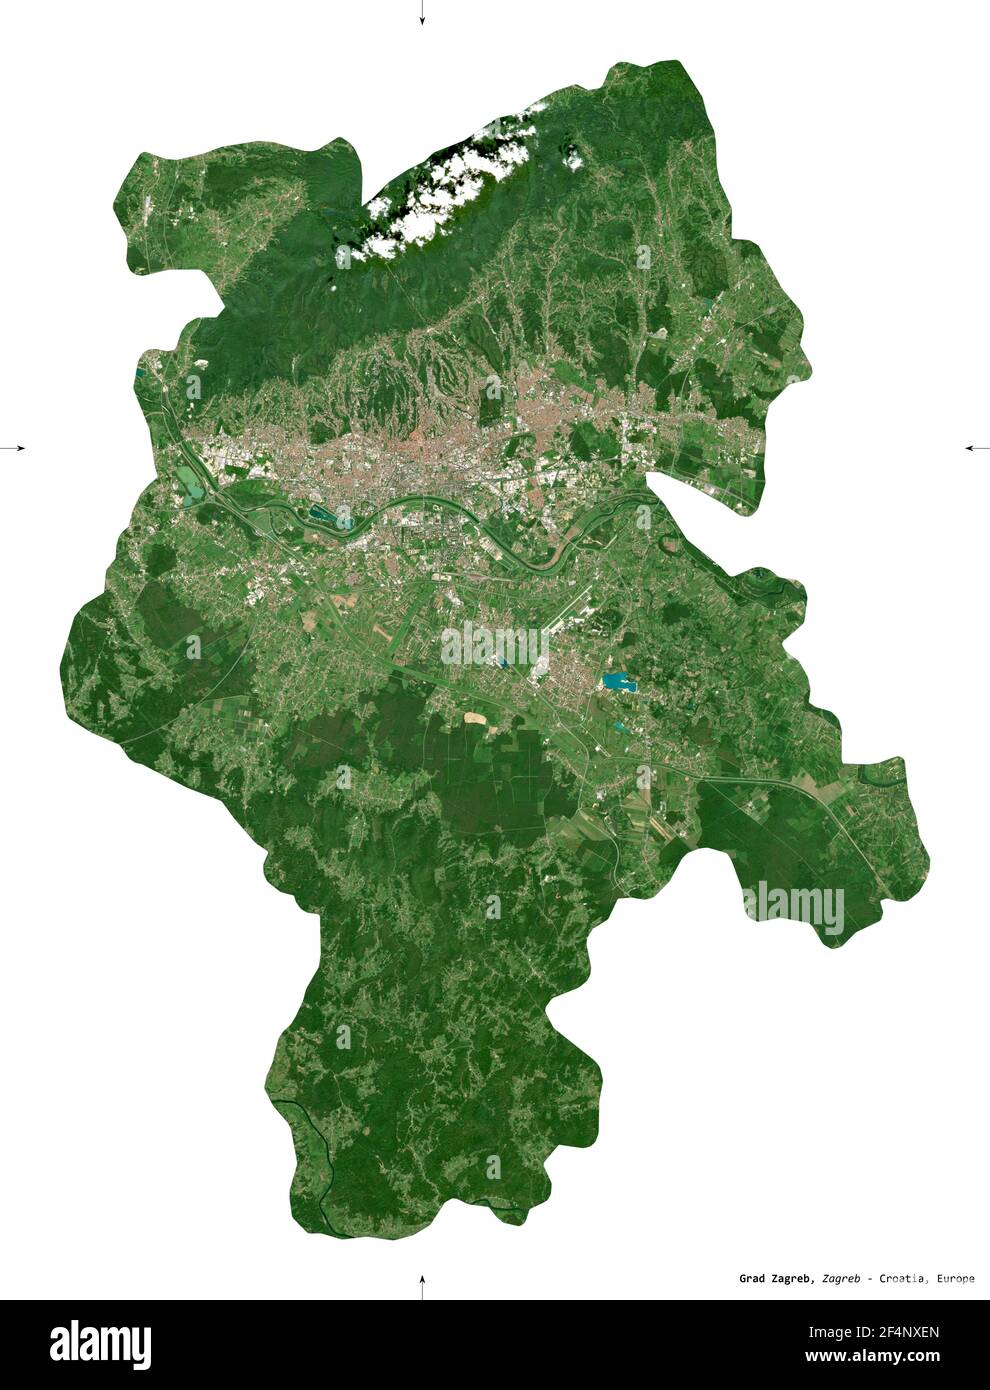 Grad Zagreb, ville de Croatie. Imagerie satellite Sentinel-2. Forme isolée sur blanc. Description, emplacement de la capitale. Contient Copernicu modifié Banque D'Images